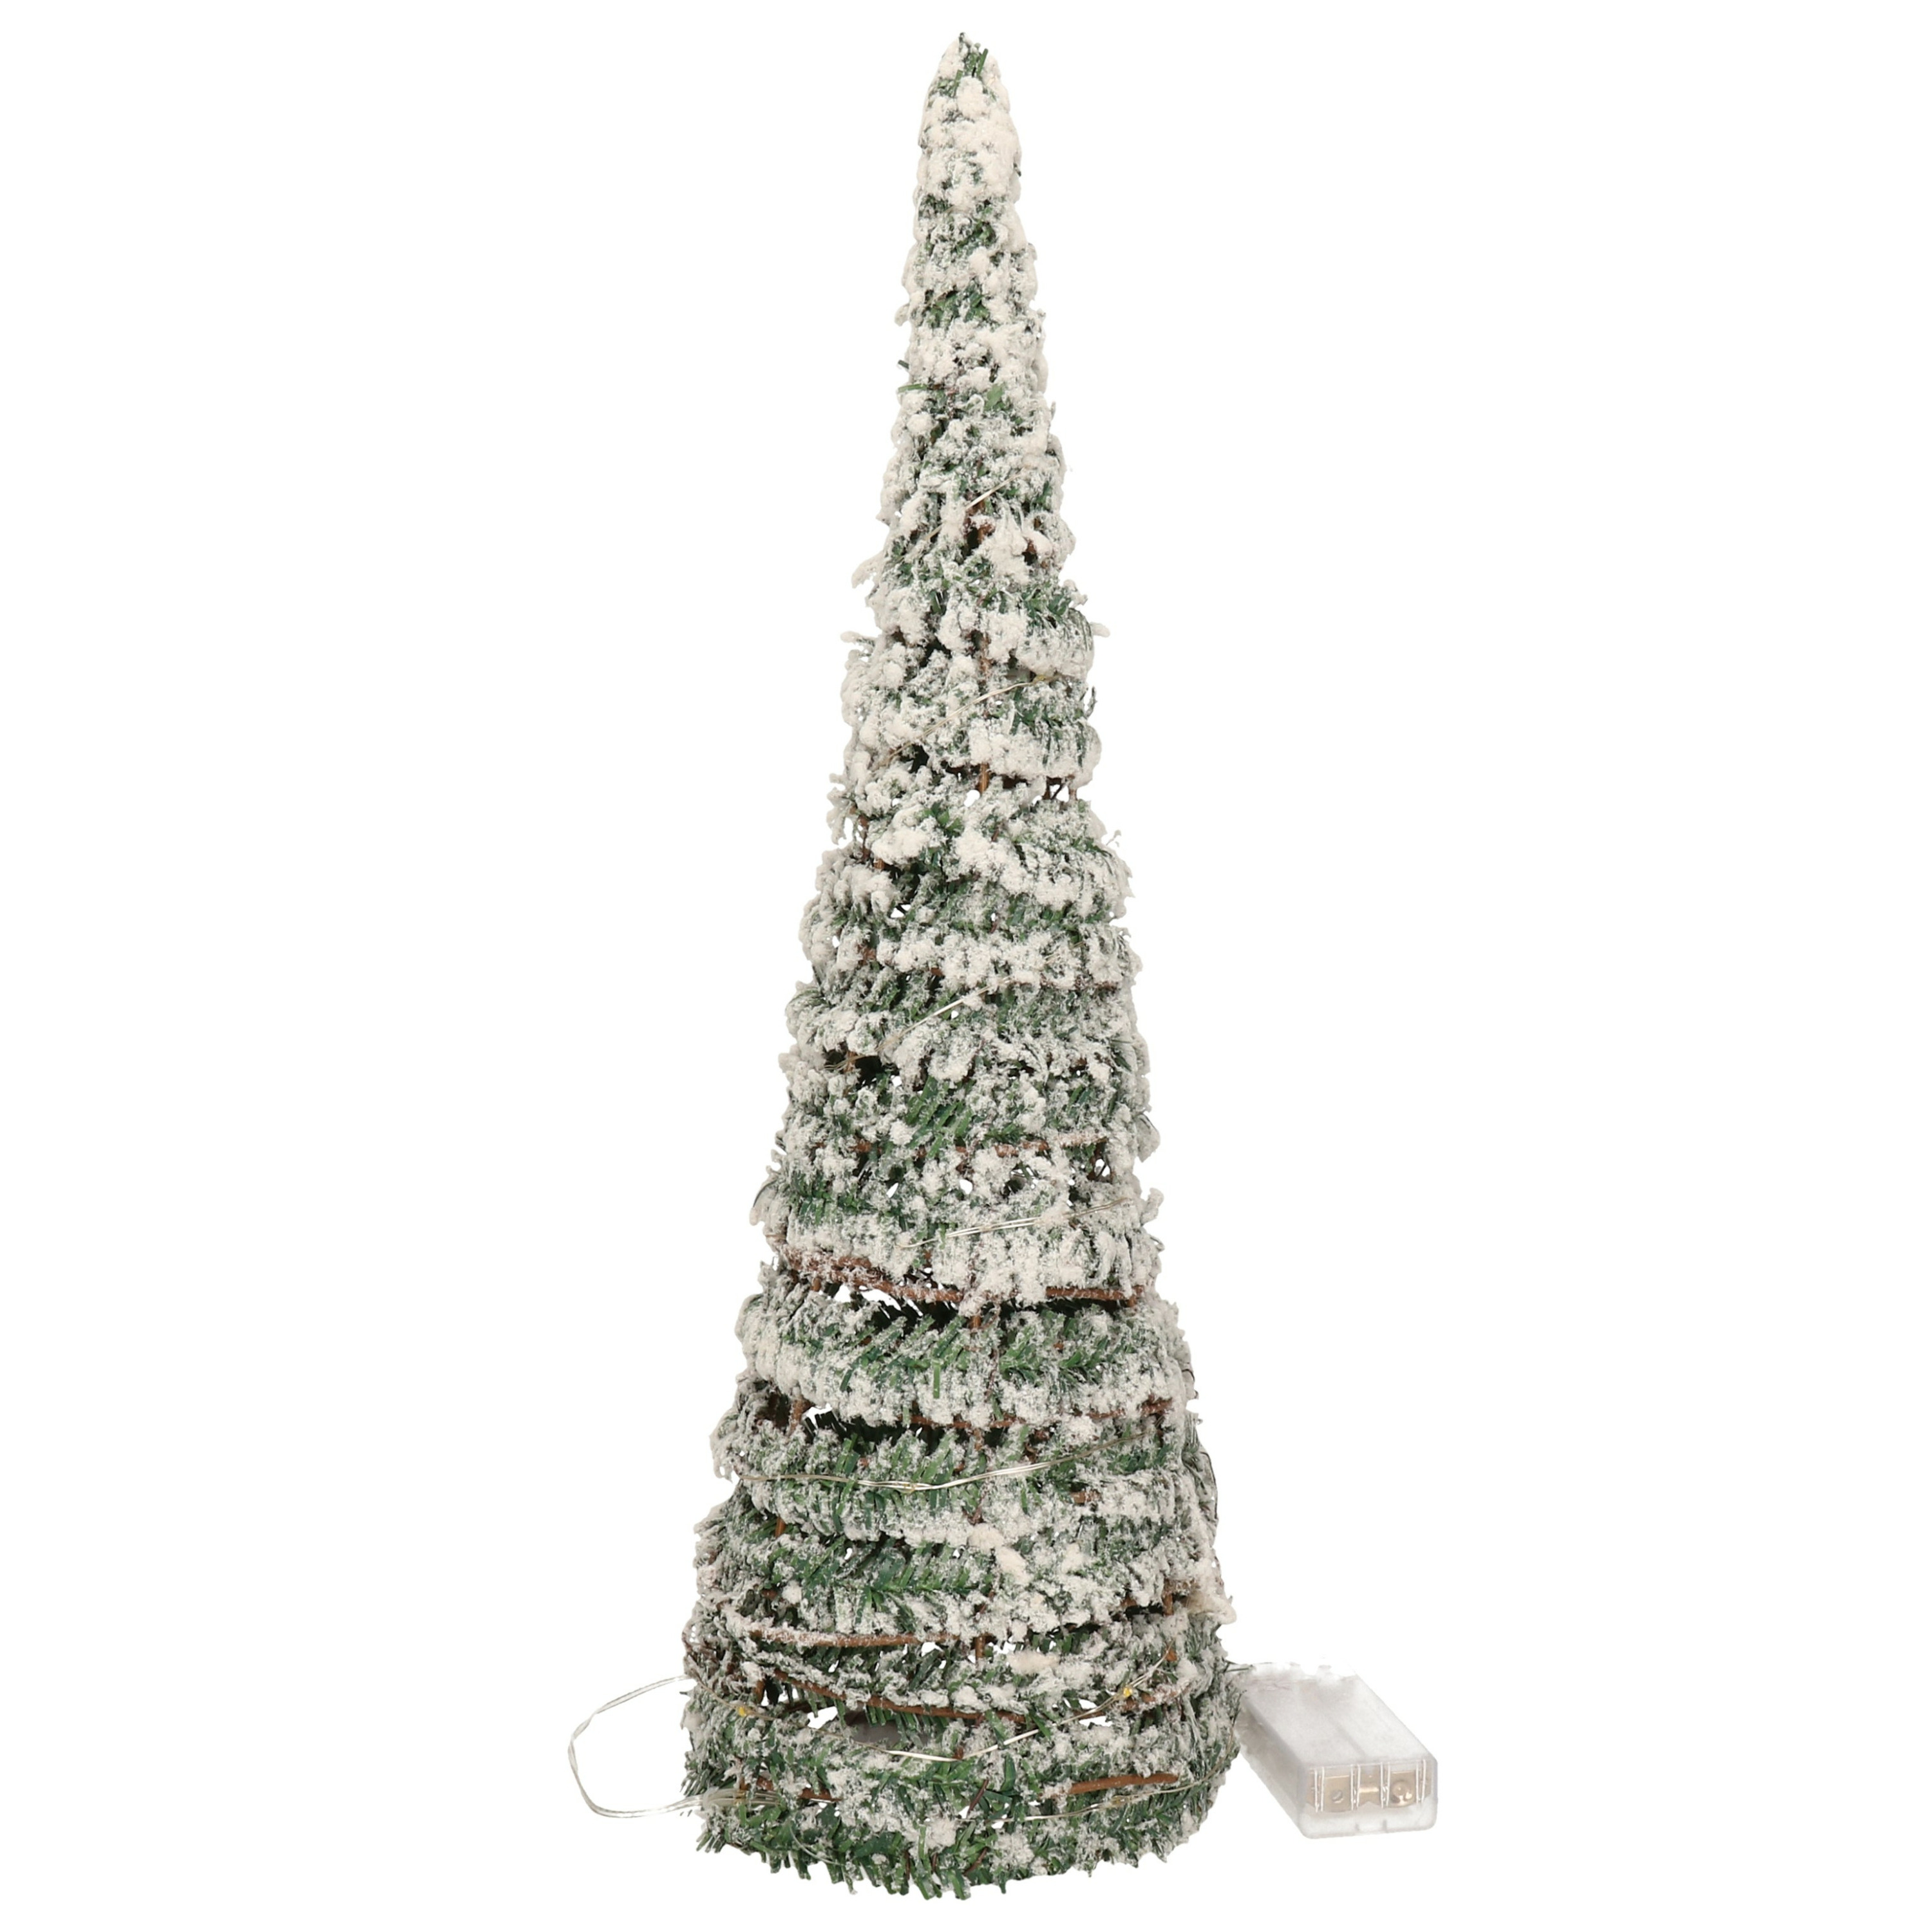 Kerstverlichting figuren Led kegel kerstboom groen besneeuwd 60 cm